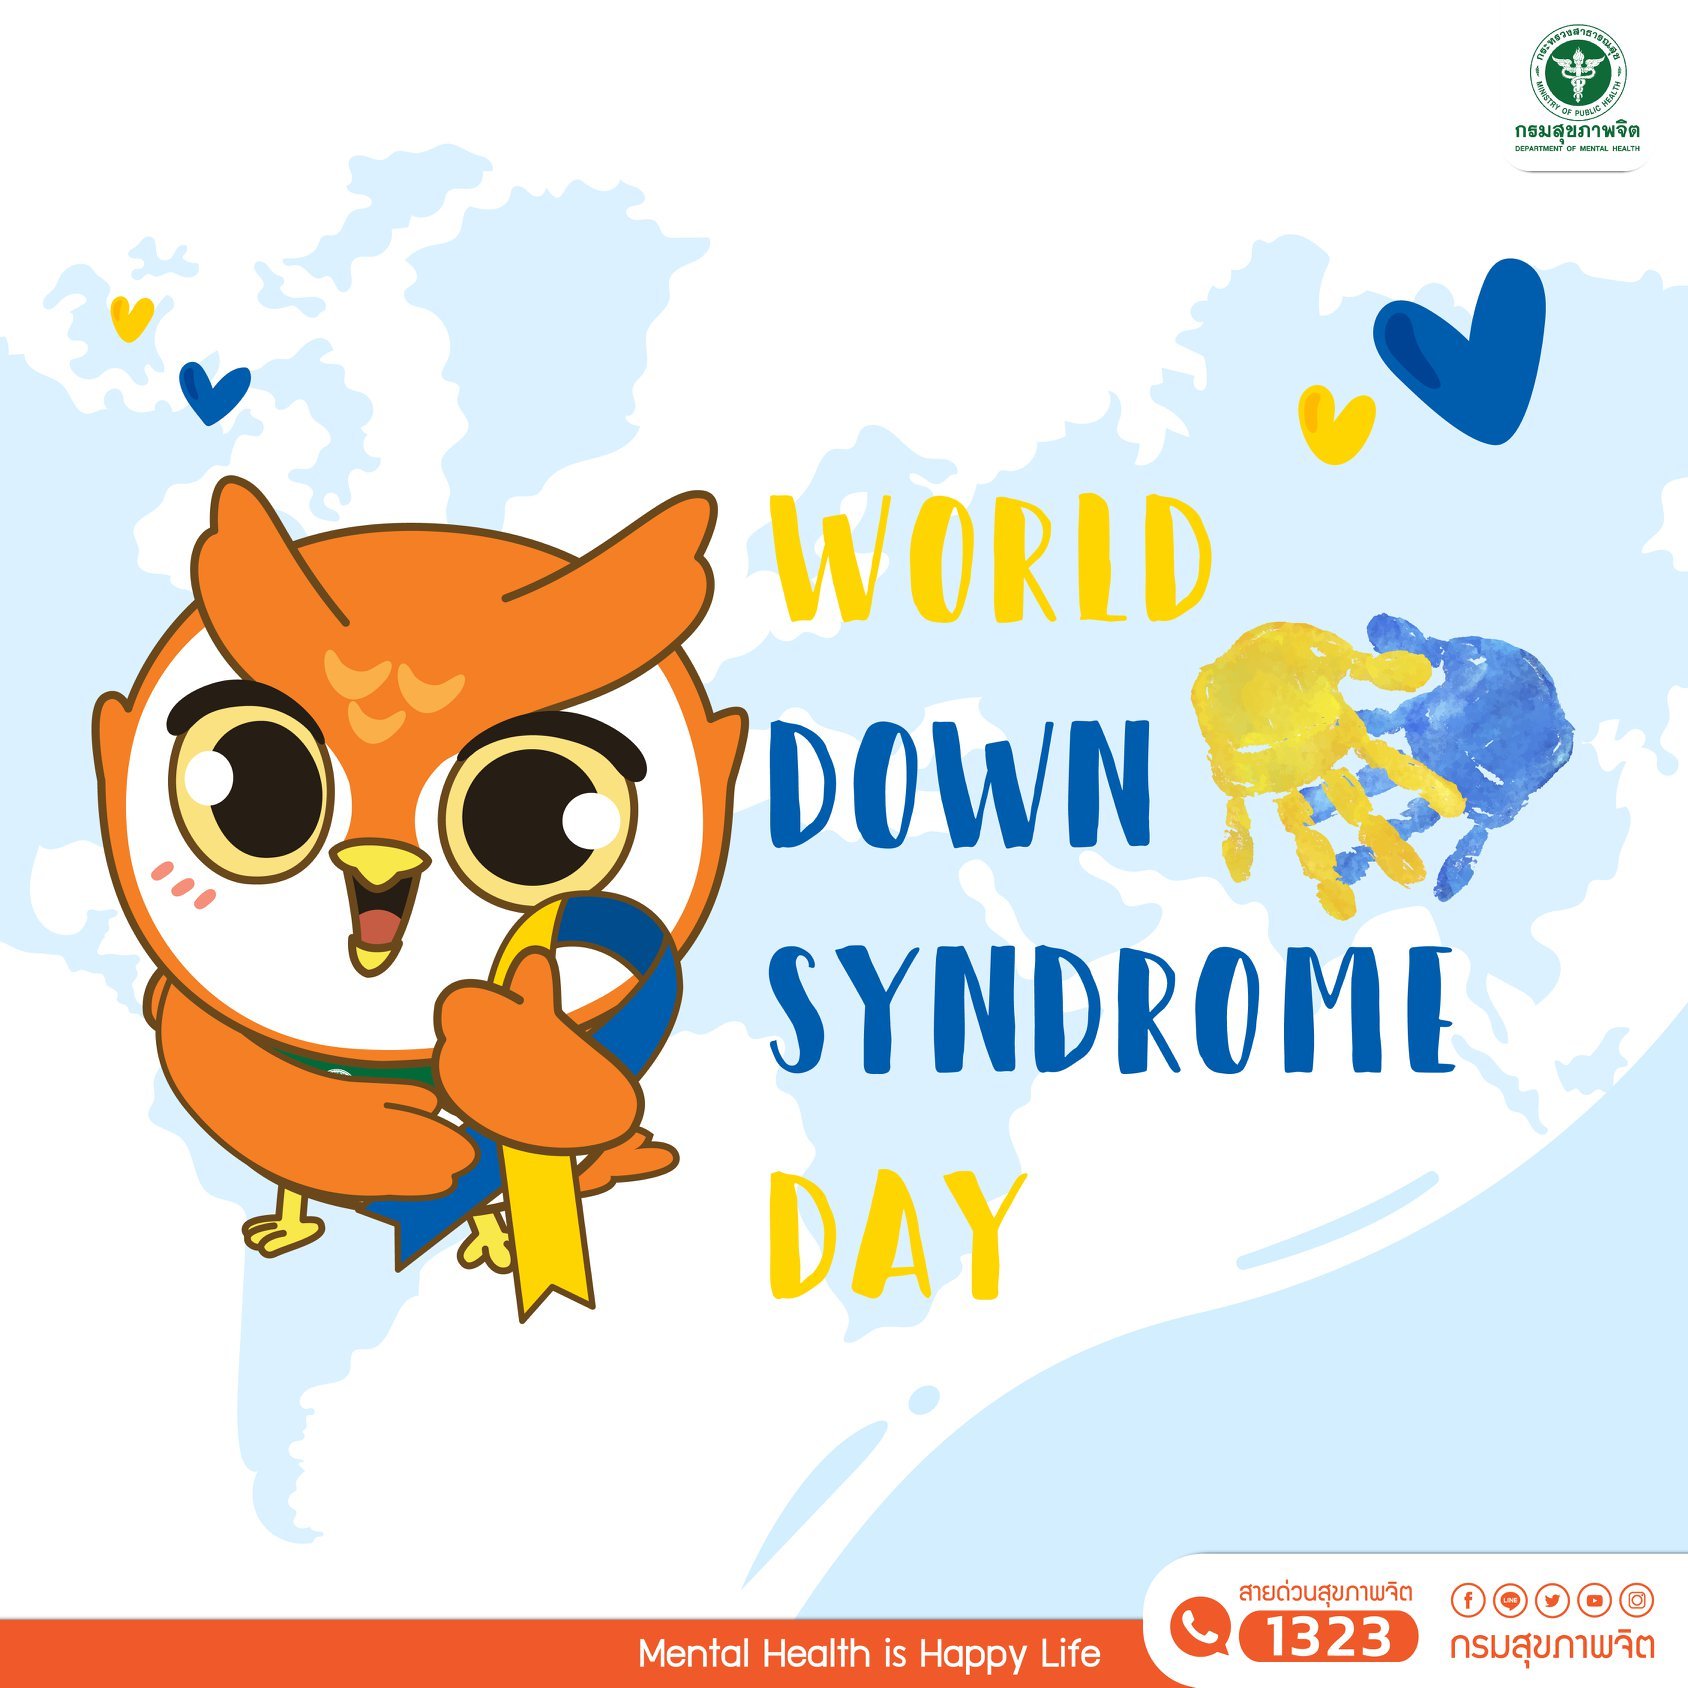 21 มีนาคม วันดาวน์ซินโดรมโลก (World Down Syndrome Day)